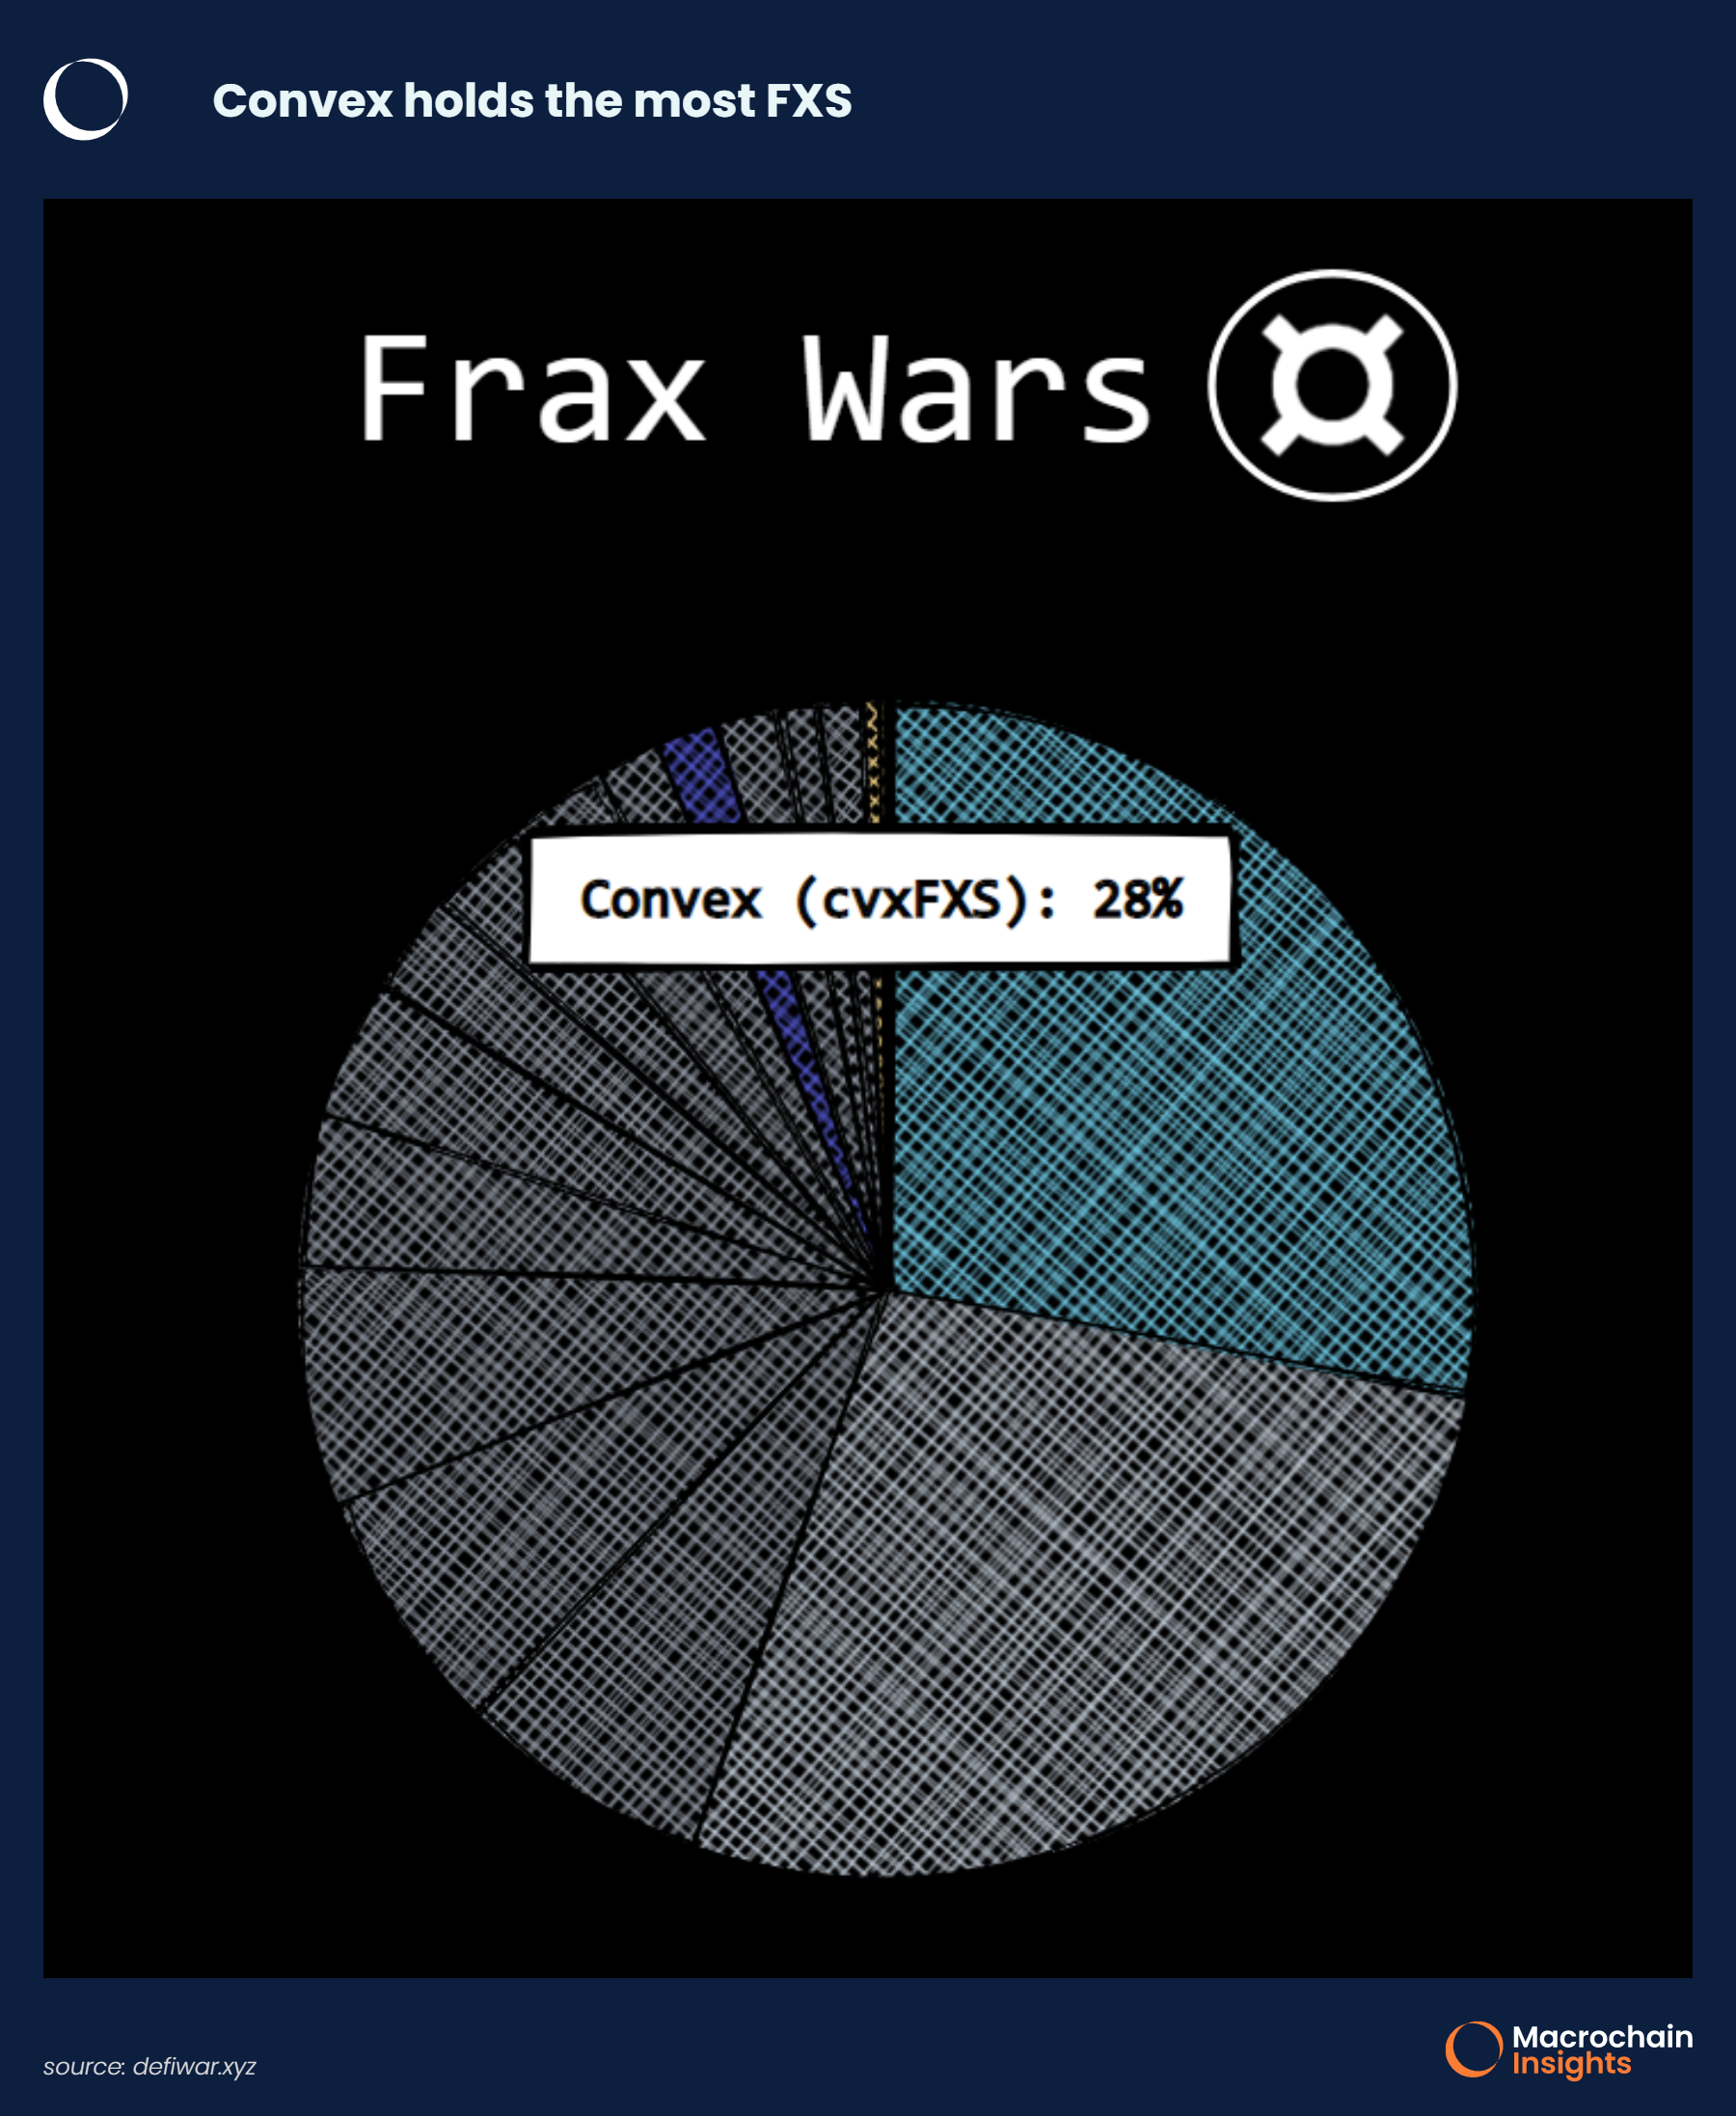 Frax Wars